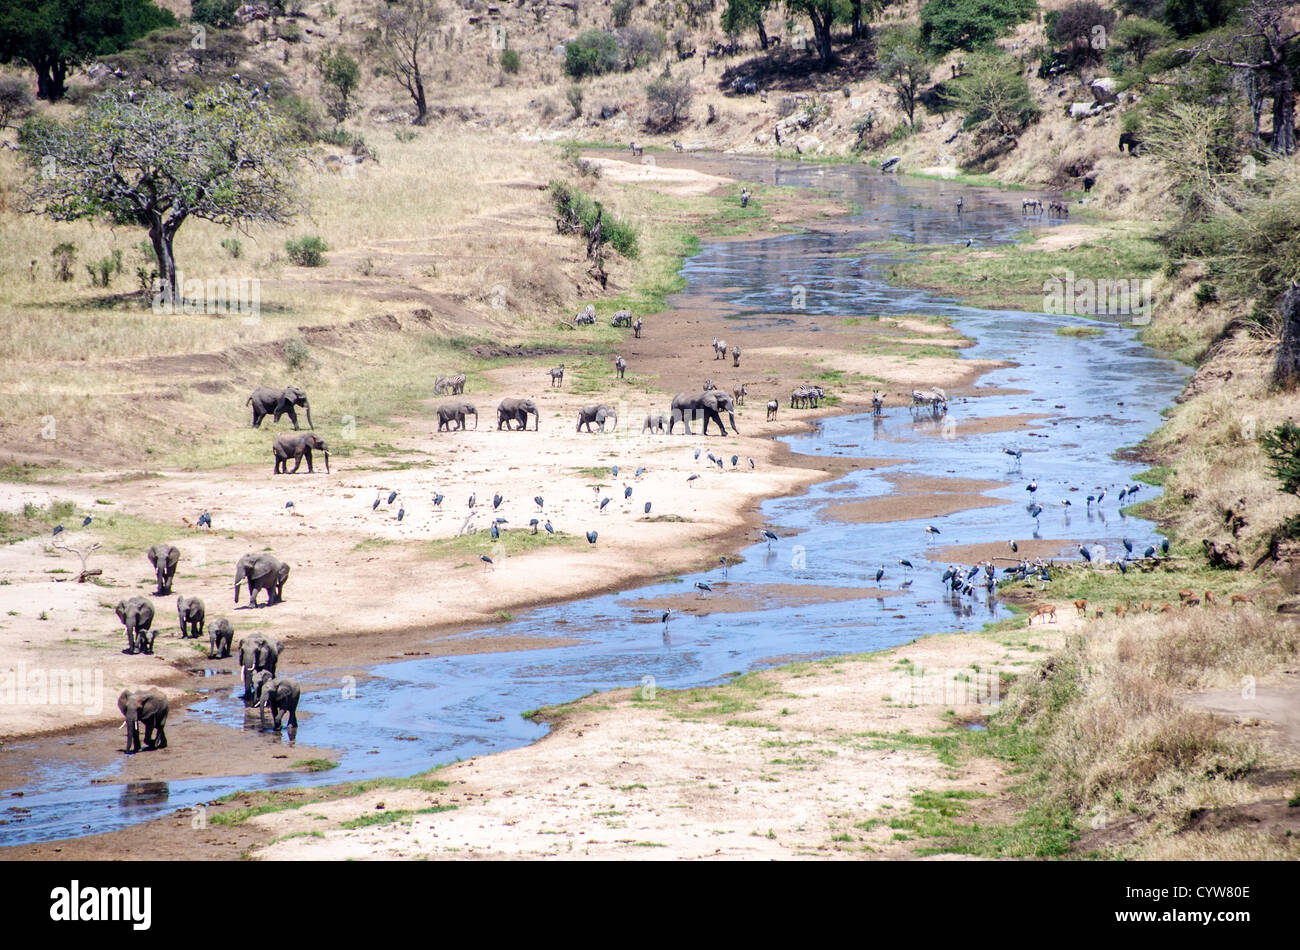 PARCO NAZIONALE DI TARANGIRE, Tanzania - il fiume Tarangire è una delle due principali fonti d'acqua per gli animali nella stagione secca al Parco nazionale di Tarangire, nel nord della Tanzania, non lontano dal cratere di Ngorongoro e dal Serengeti. In questo colpo, elefanti, zebre e gru si riuniscono in un'ansa del fiume. Il cratere di Ngorongoro, patrimonio dell'umanità dell'UNESCO, è una vasta caldera vulcanica nel nord della Tanzania. Creato 2-3 milioni di anni fa, misura circa 20 chilometri di diametro ed è sede di diversi animali selvatici, tra cui i "Big Five" animali da caccia. La zona protetta di Ngorongoro, abitata dai Maas Foto Stock